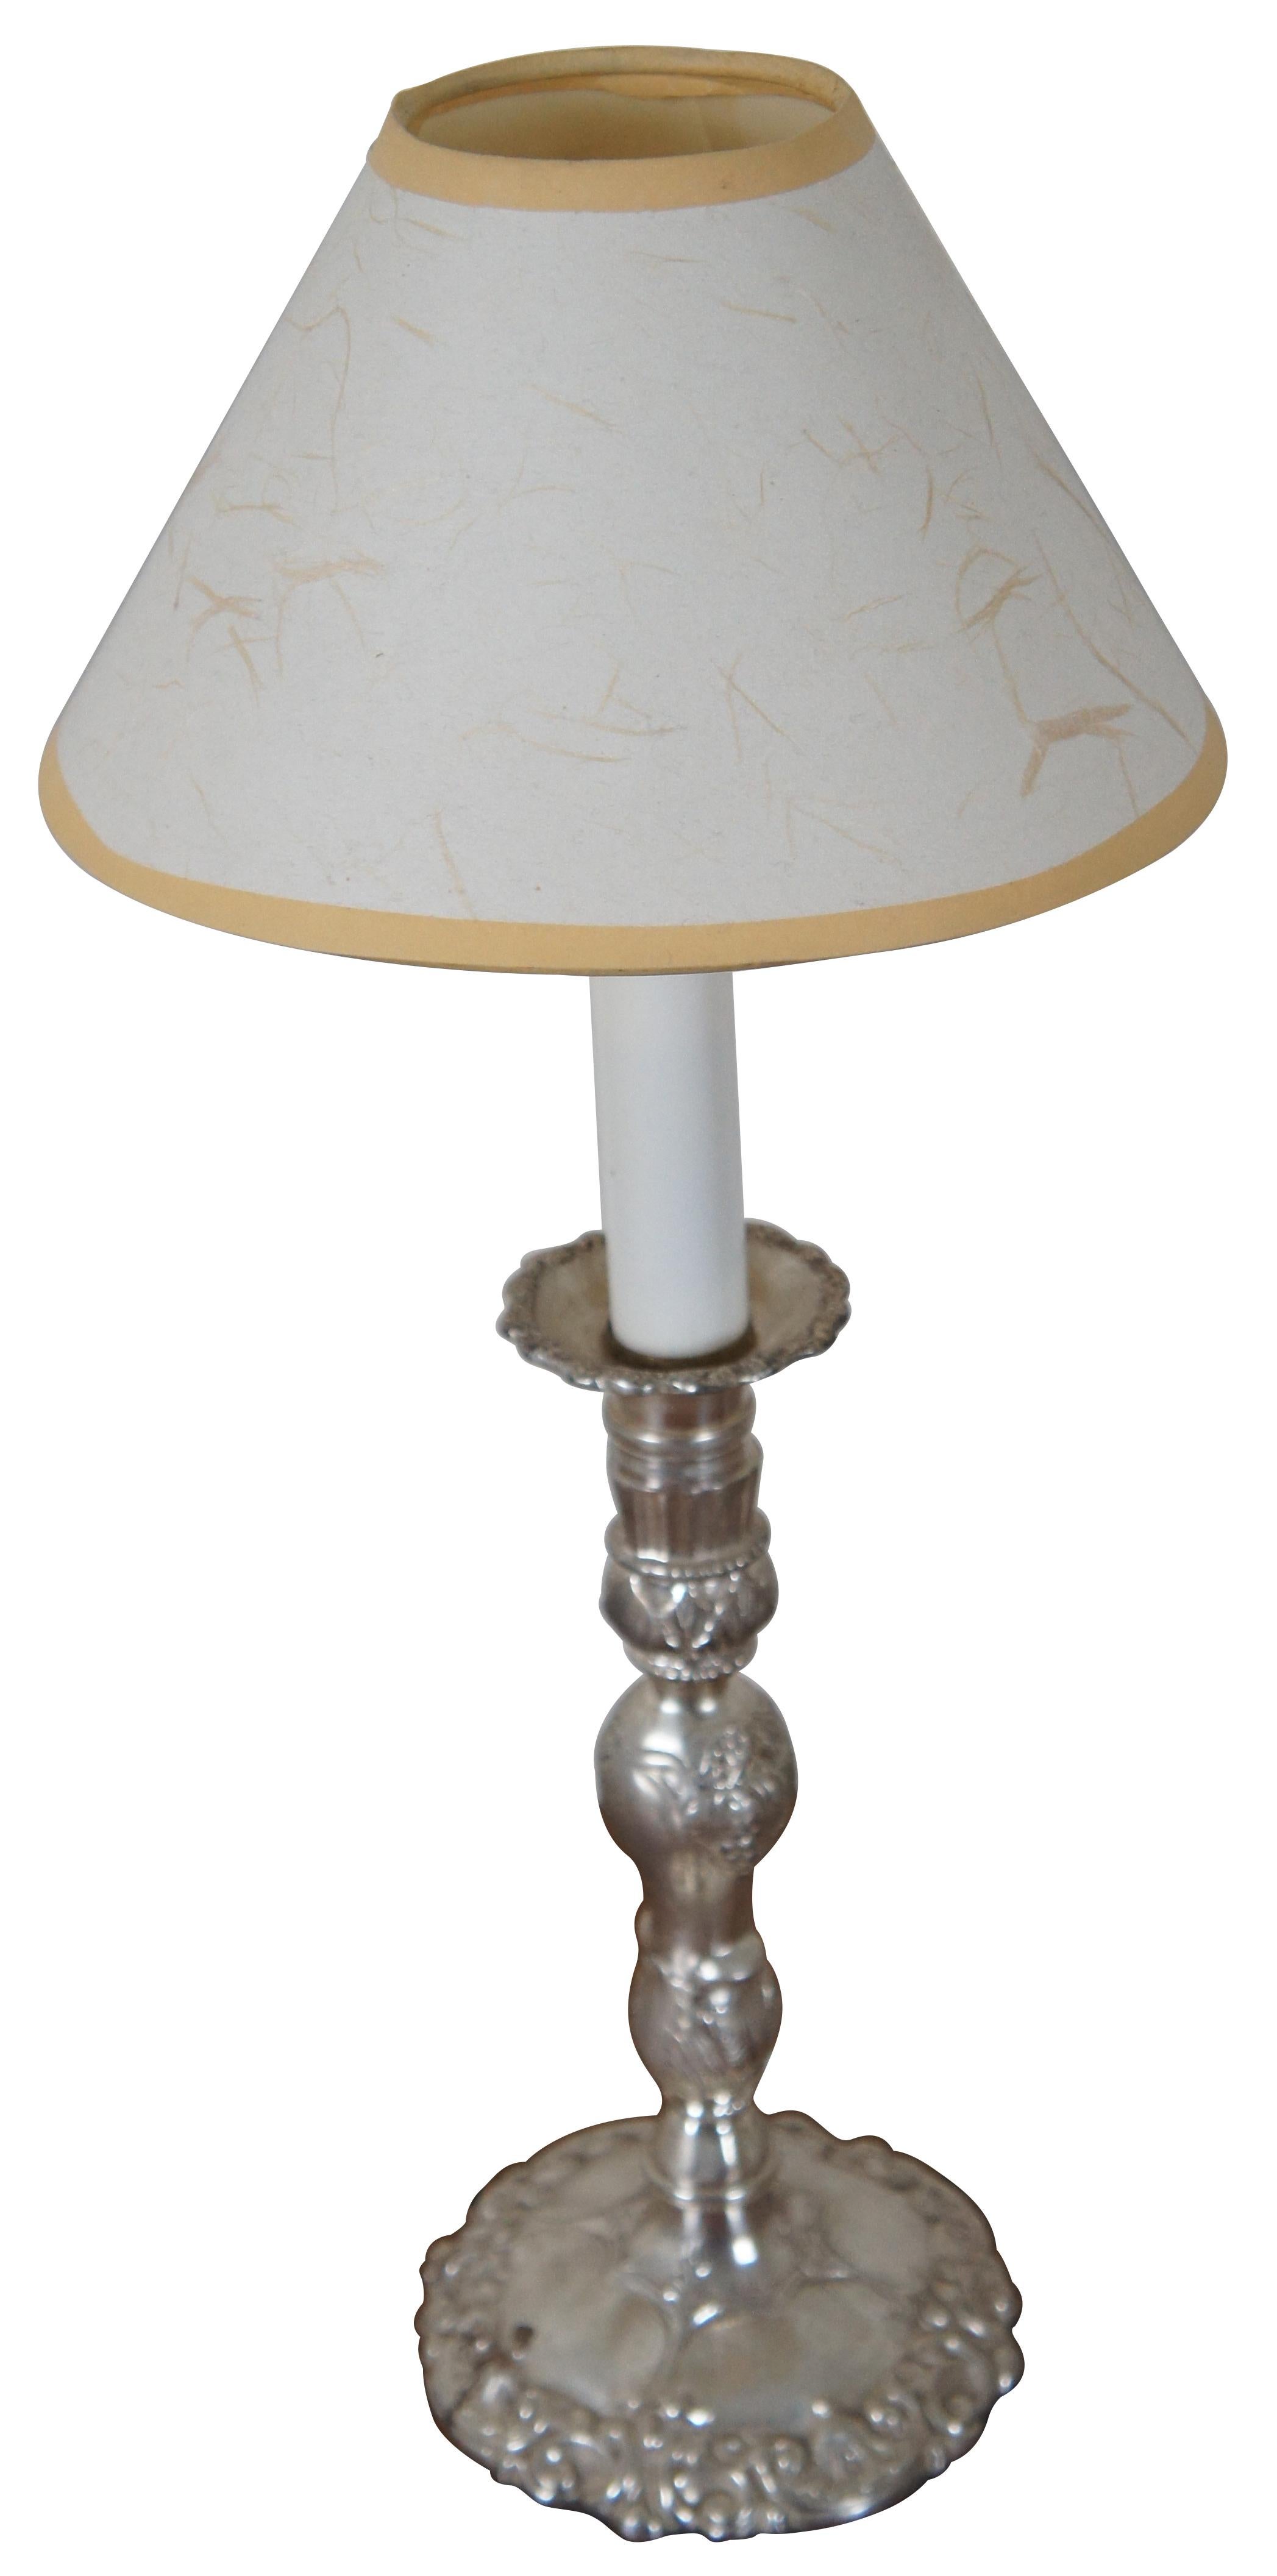 Antike neoklassische Stil Silber Platte Leuchter geformt Buffet / Tischlampe mit weißen und gelben Papier Schatten.

5